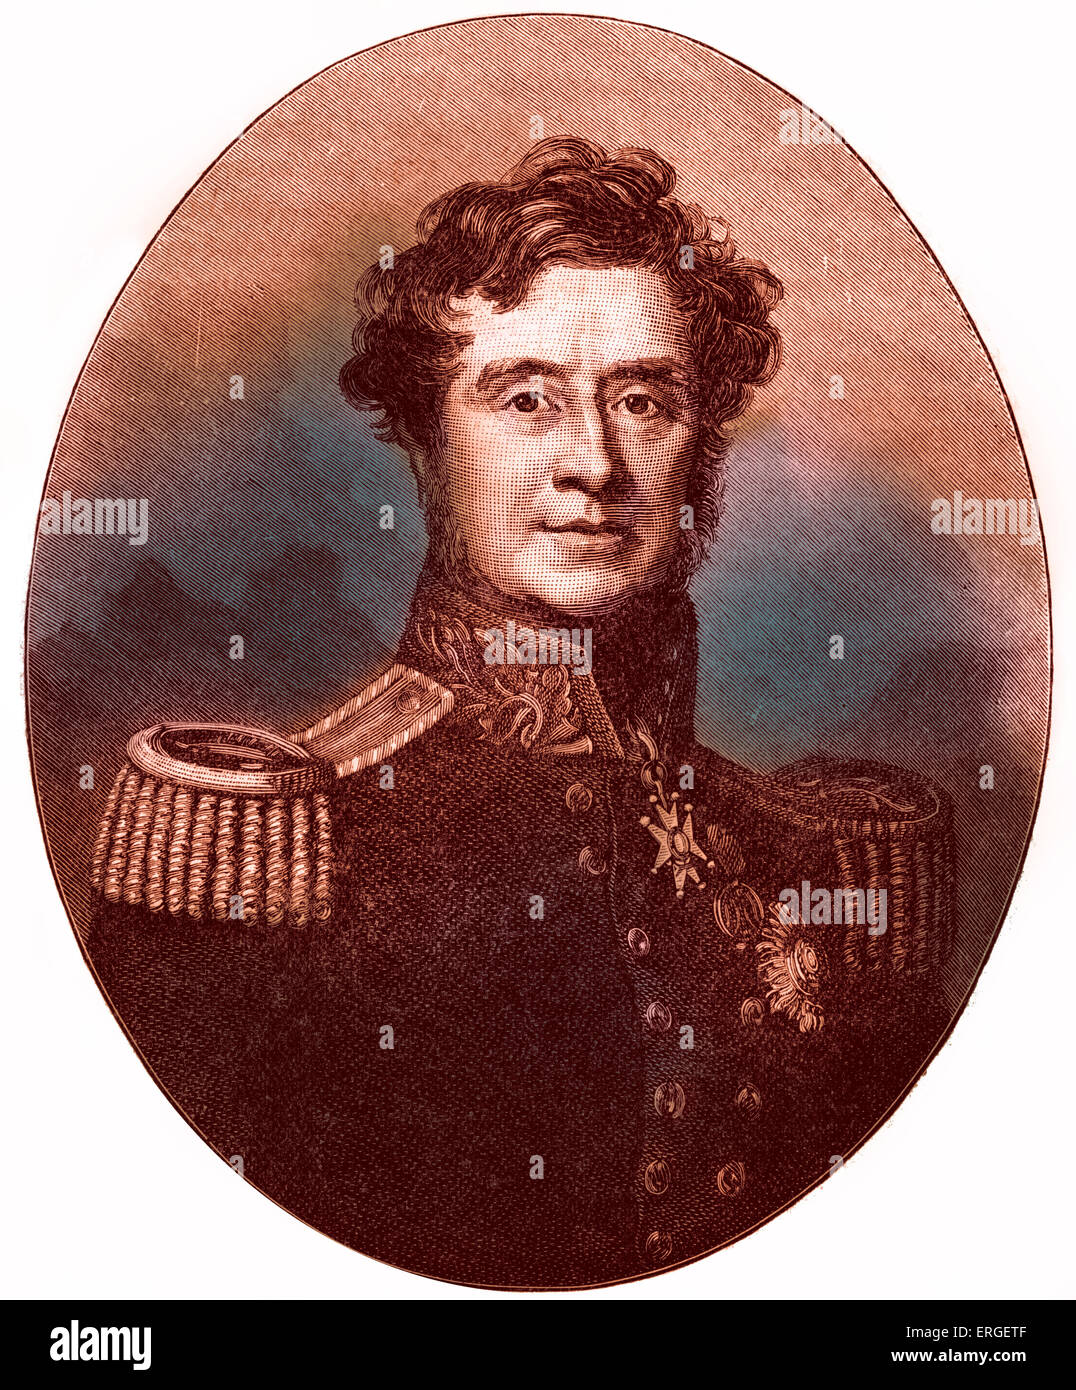 FitzRoy Somerset, 1er baron Raglan - portrait. Soldat britannique et maréchal de camp, commandant des forces britanniques pendant la guerre de Crimée. 30 novembre 1788 - 29 juin 1855. Banque D'Images